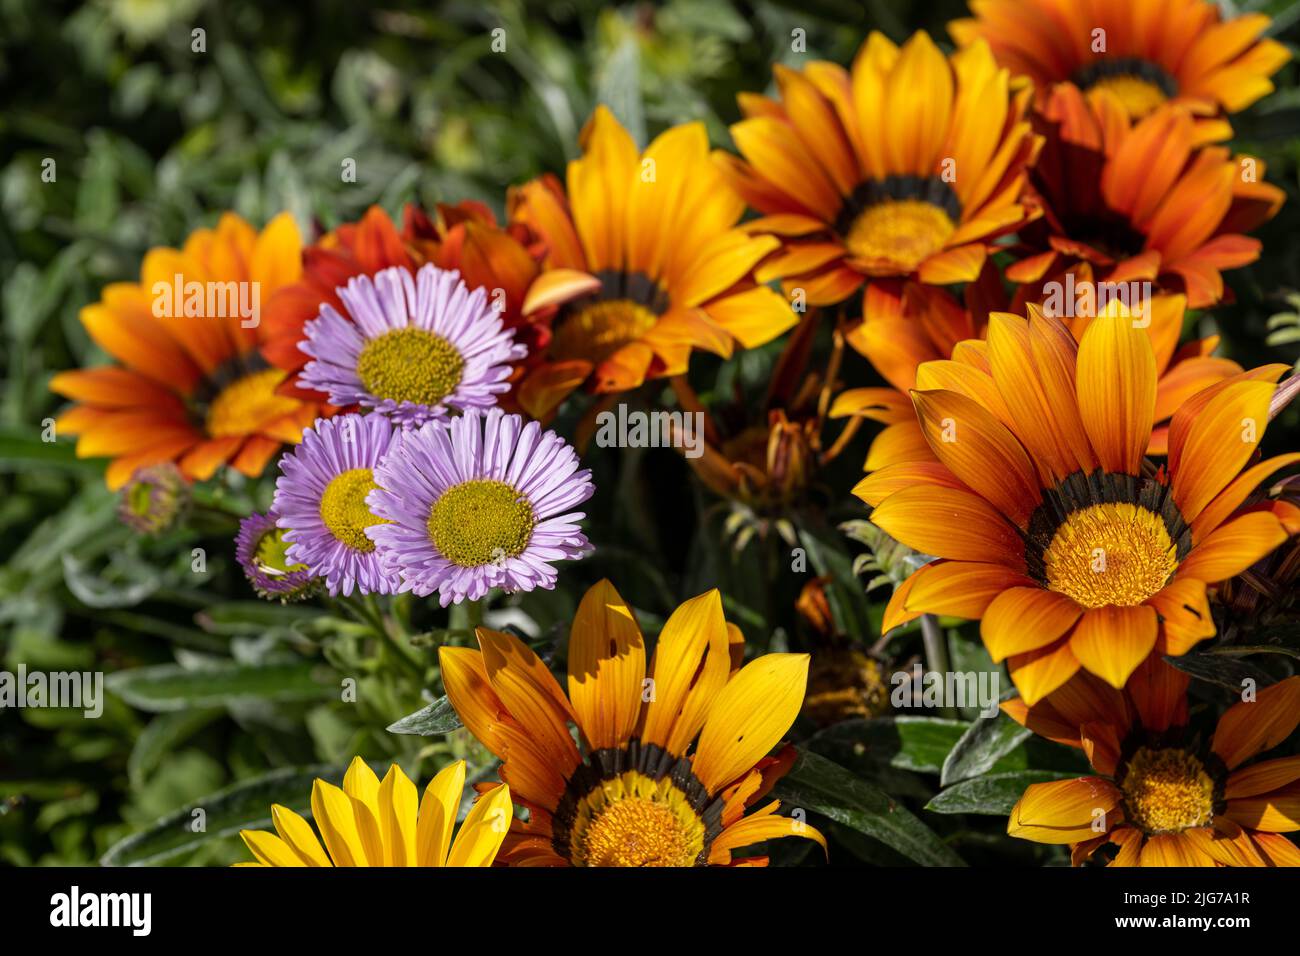 gazania daisy plant